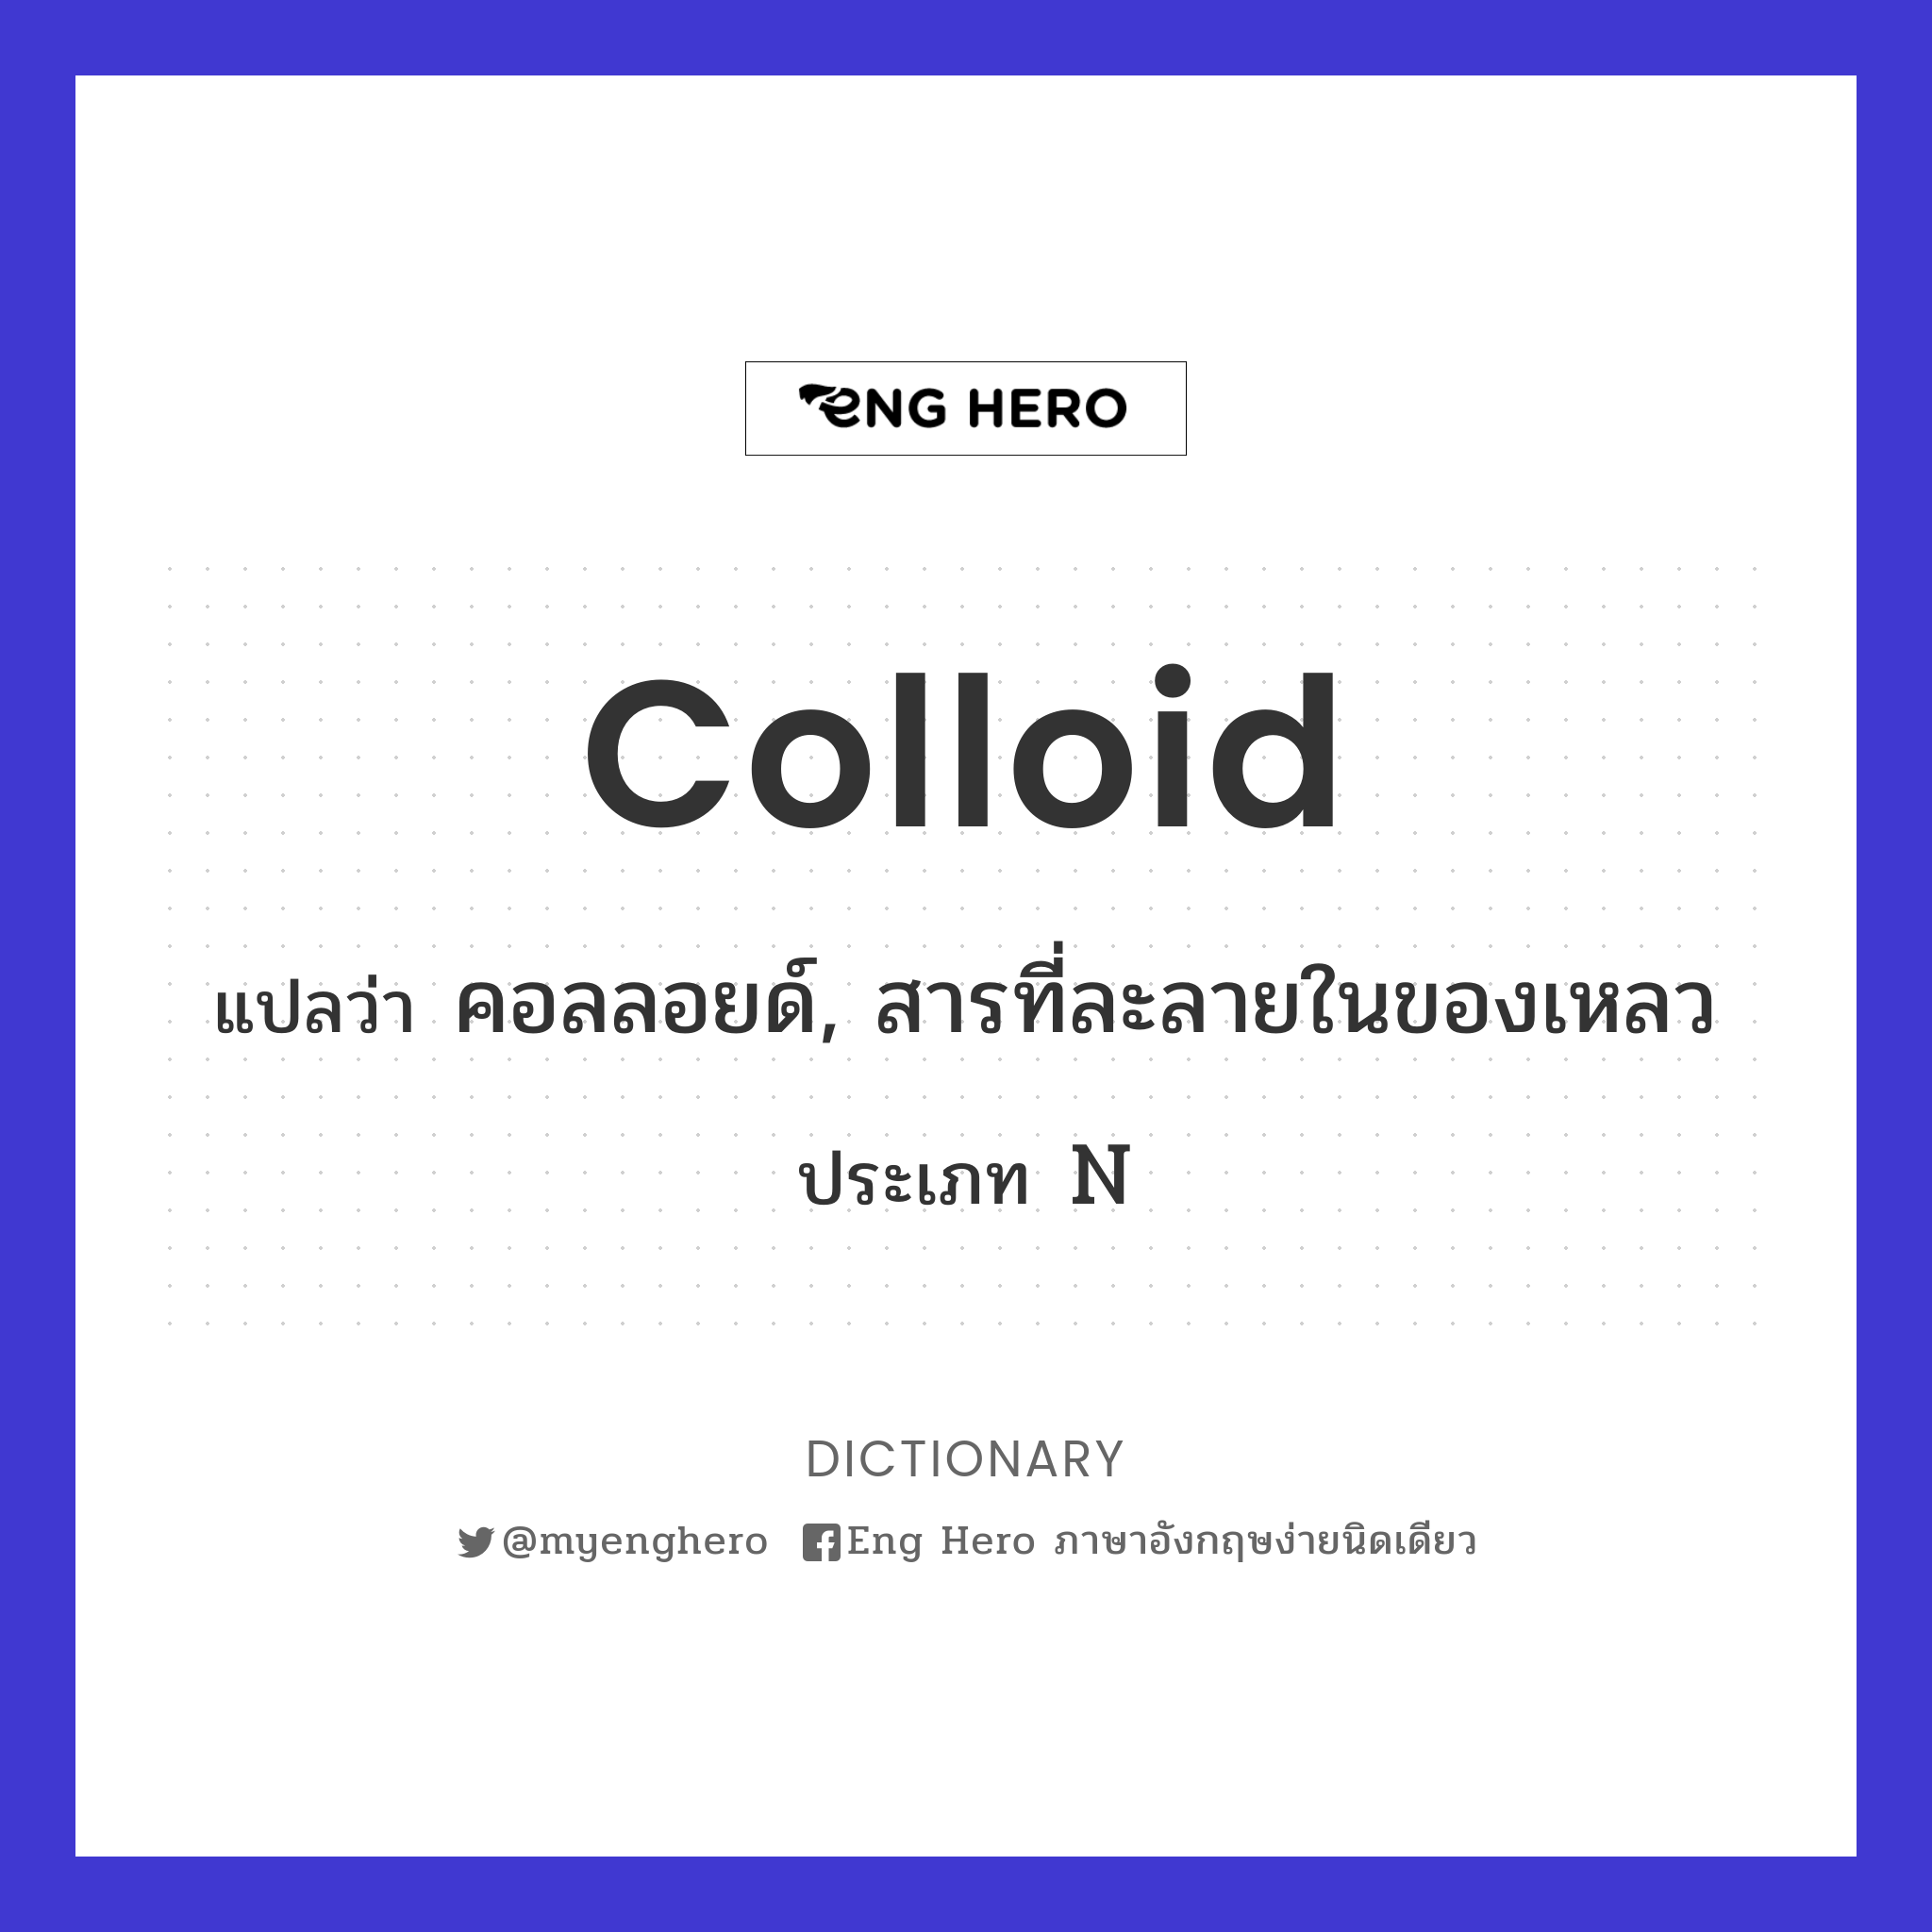 colloid